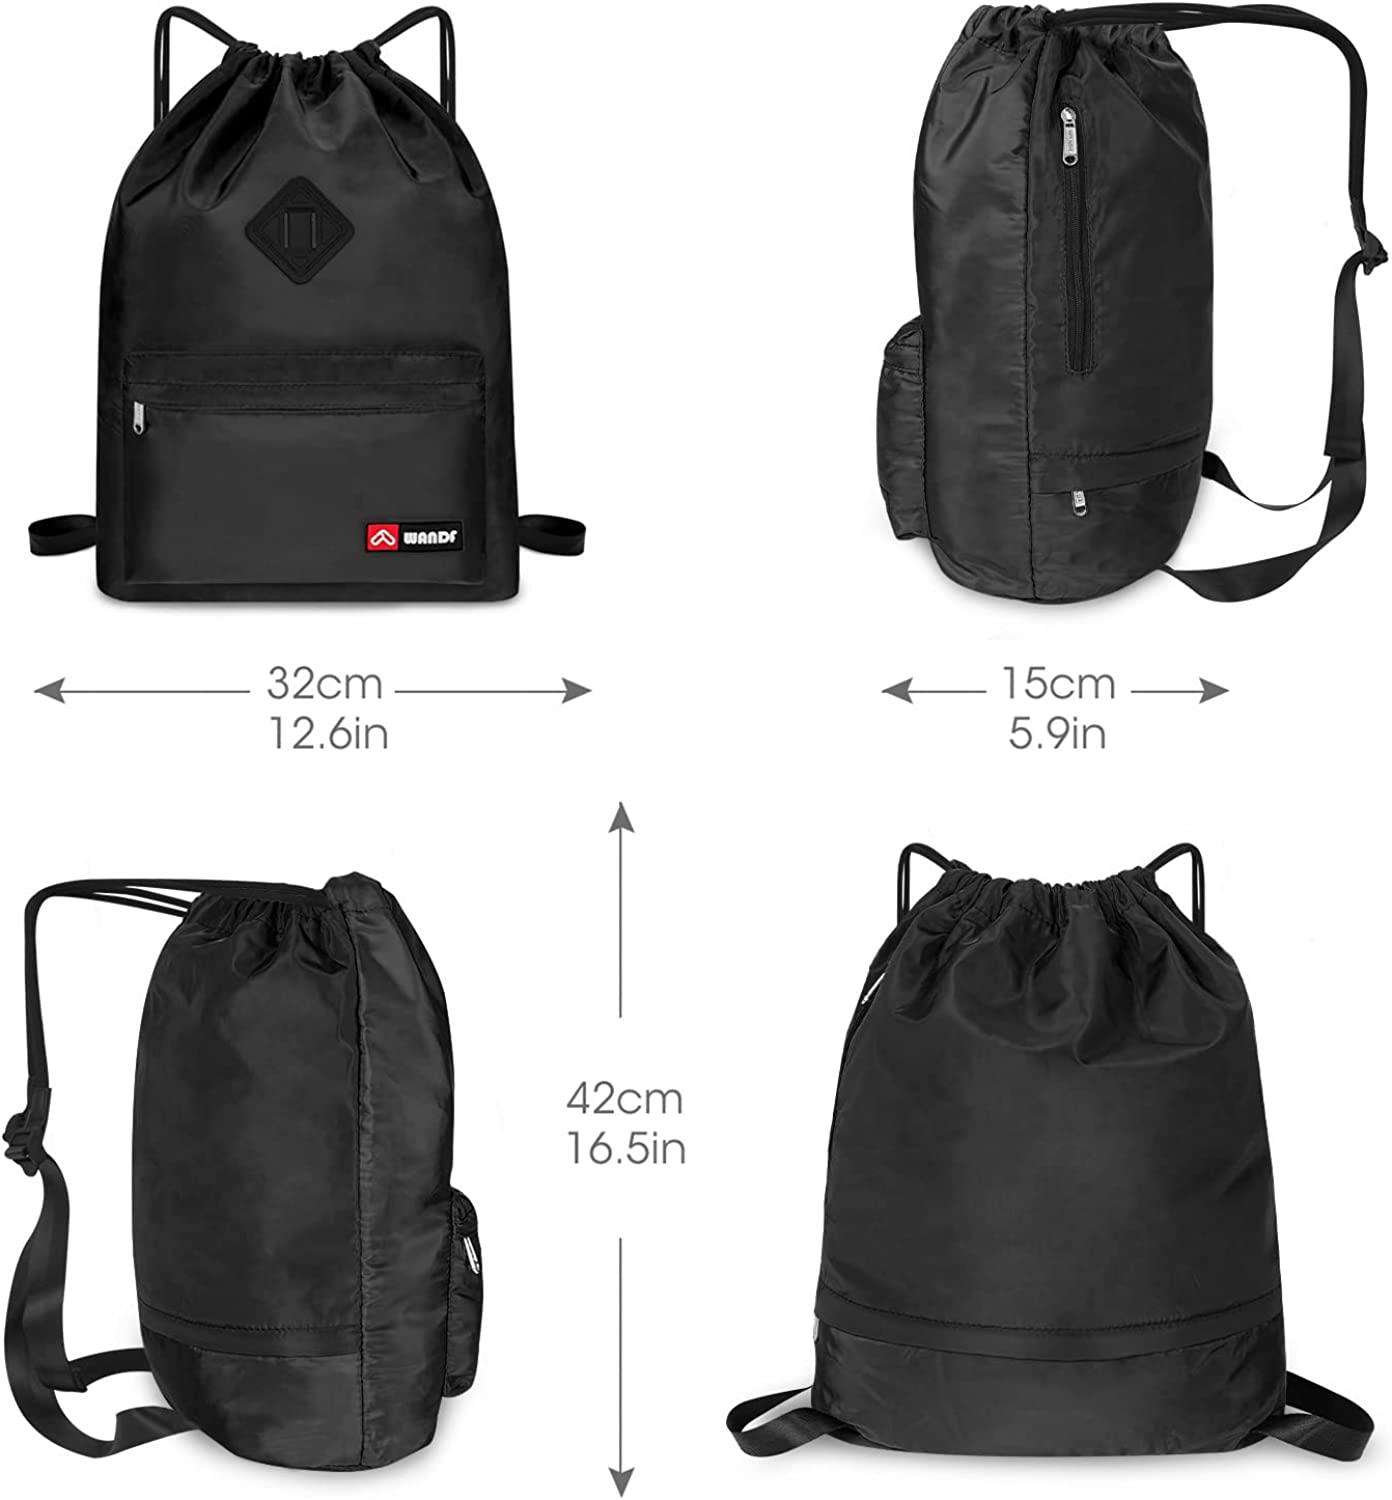 RNB540 - Nylon Pack Cloth Gym Bag | Bags, Cute gym bag, Gym bag